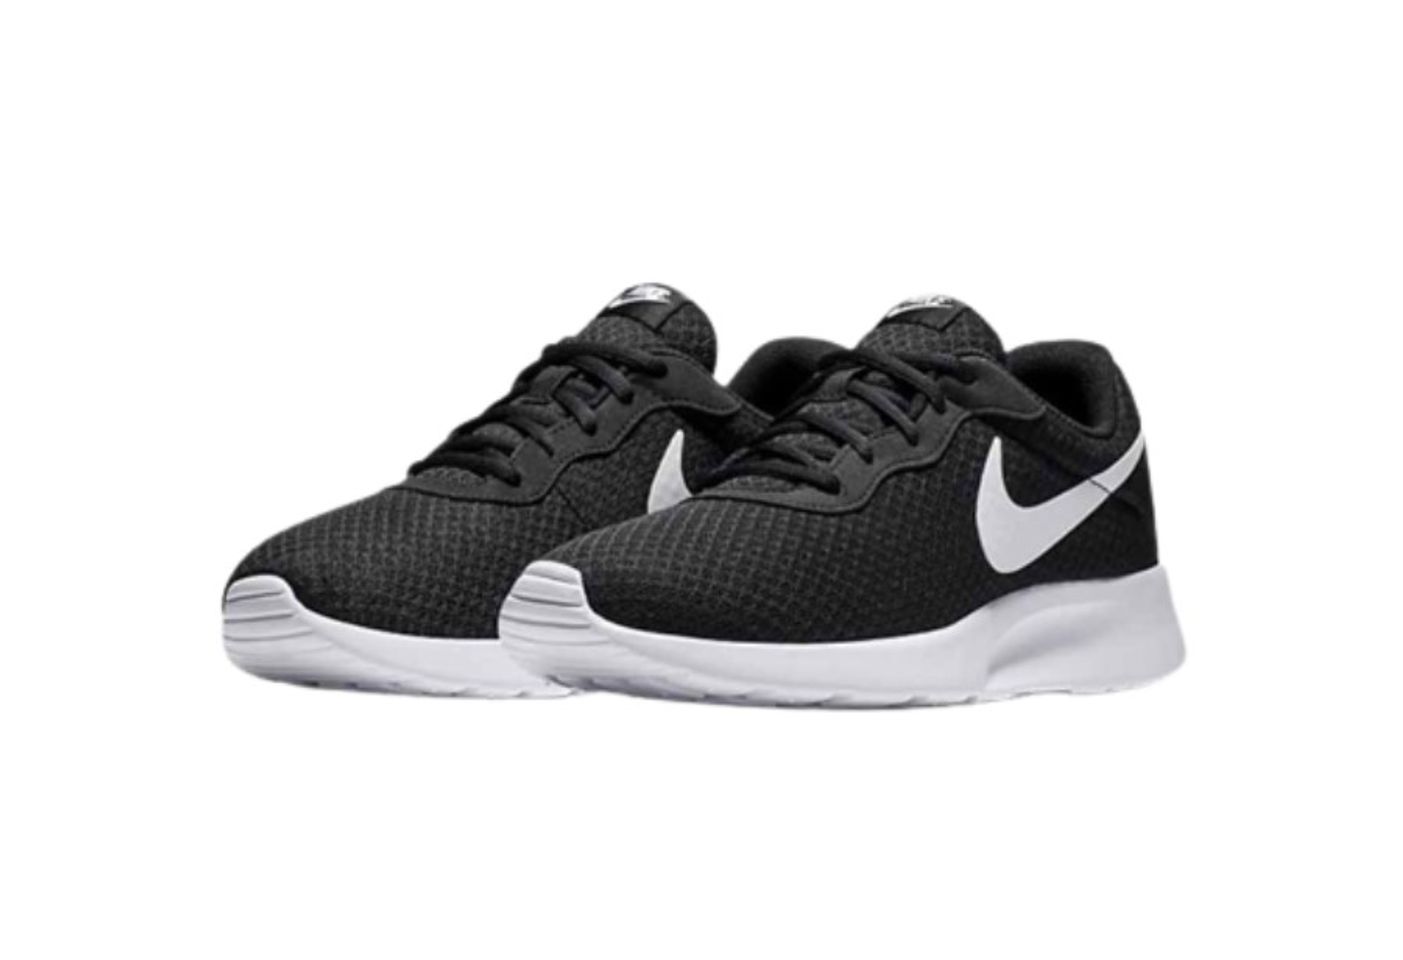 Giày thể thao Nike Tanjun màu đen trắng